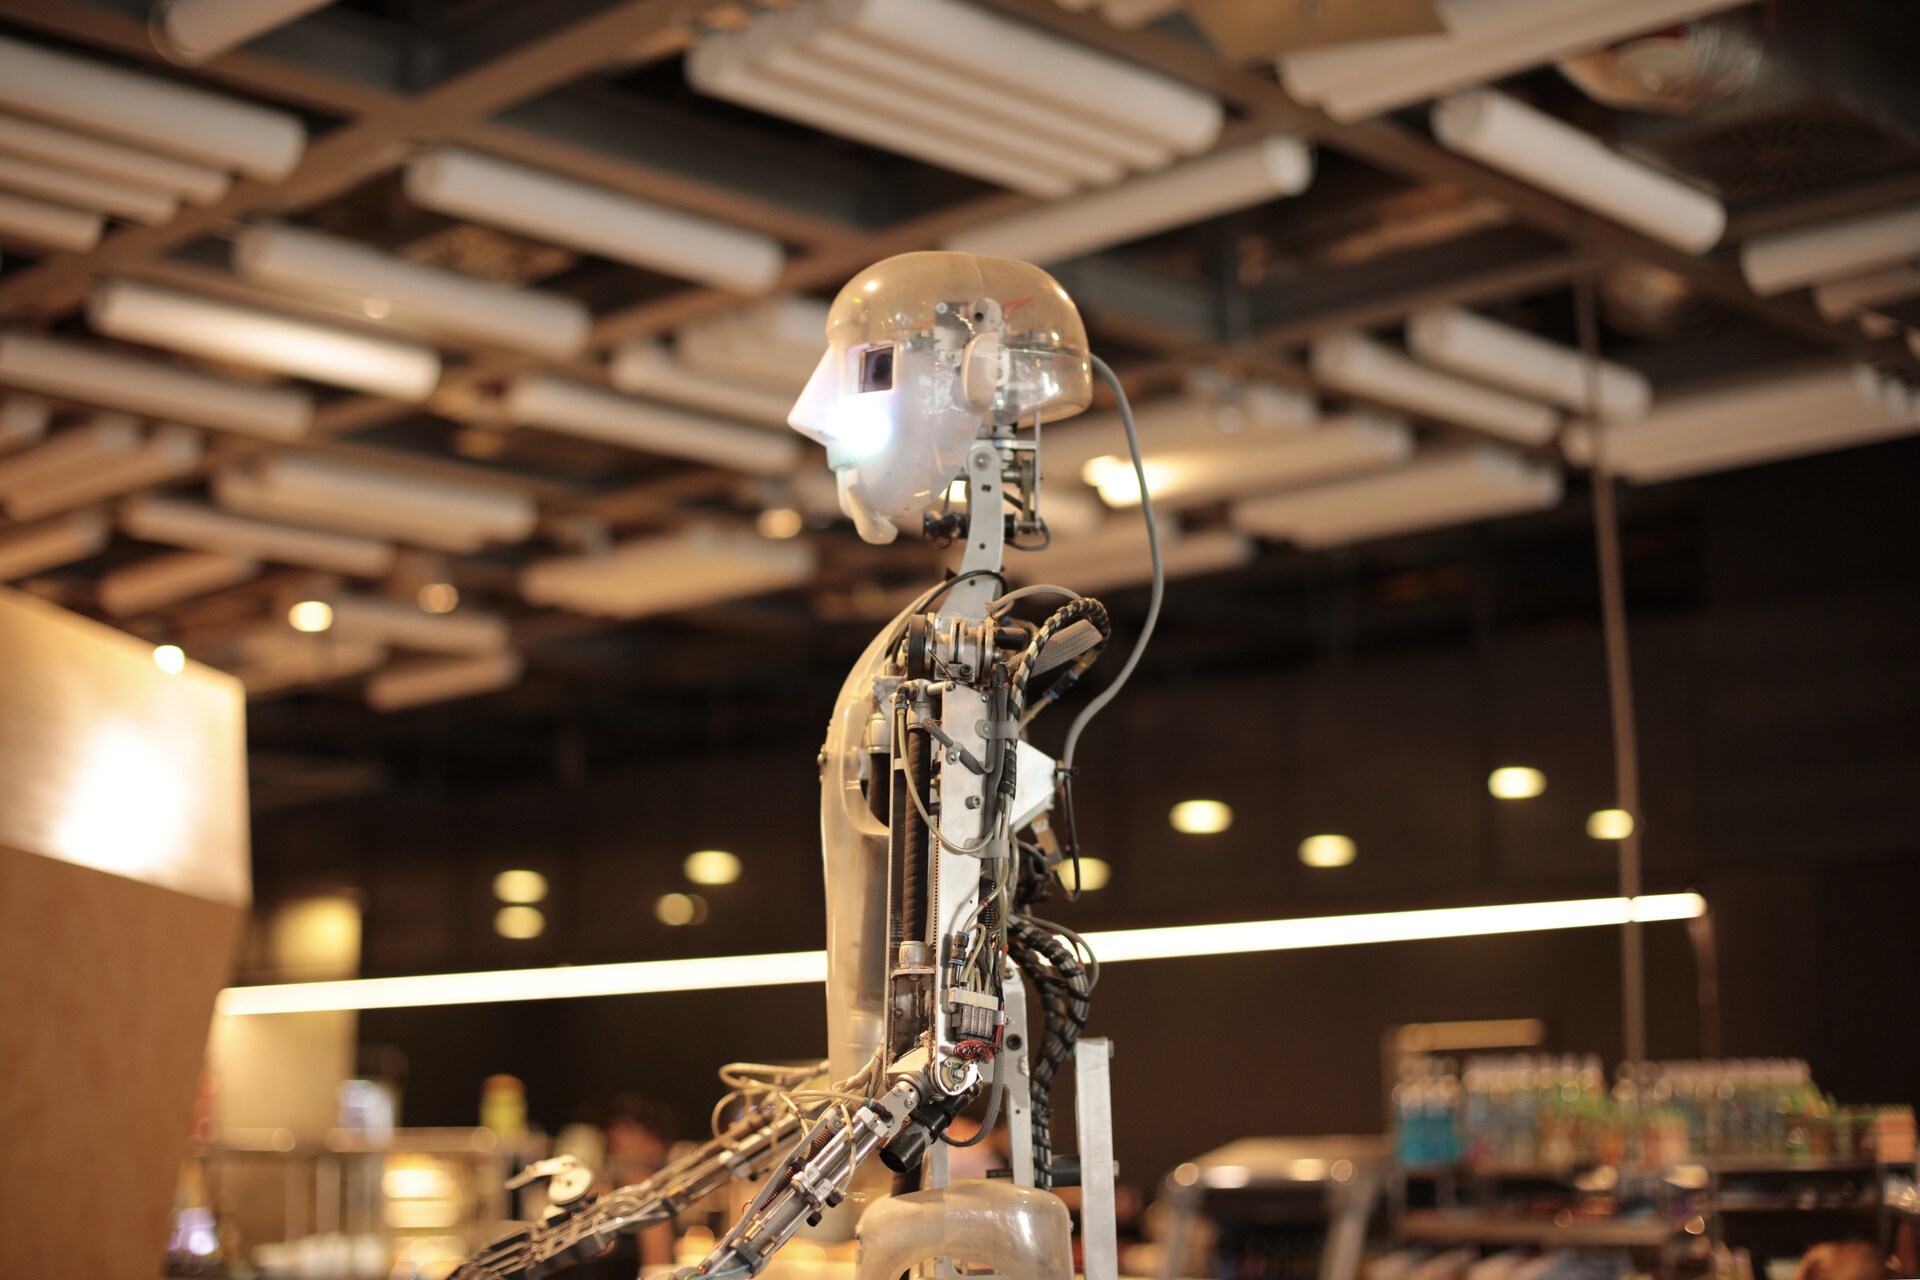 Moderan robot sa gotovo ljudskim karakteristikama